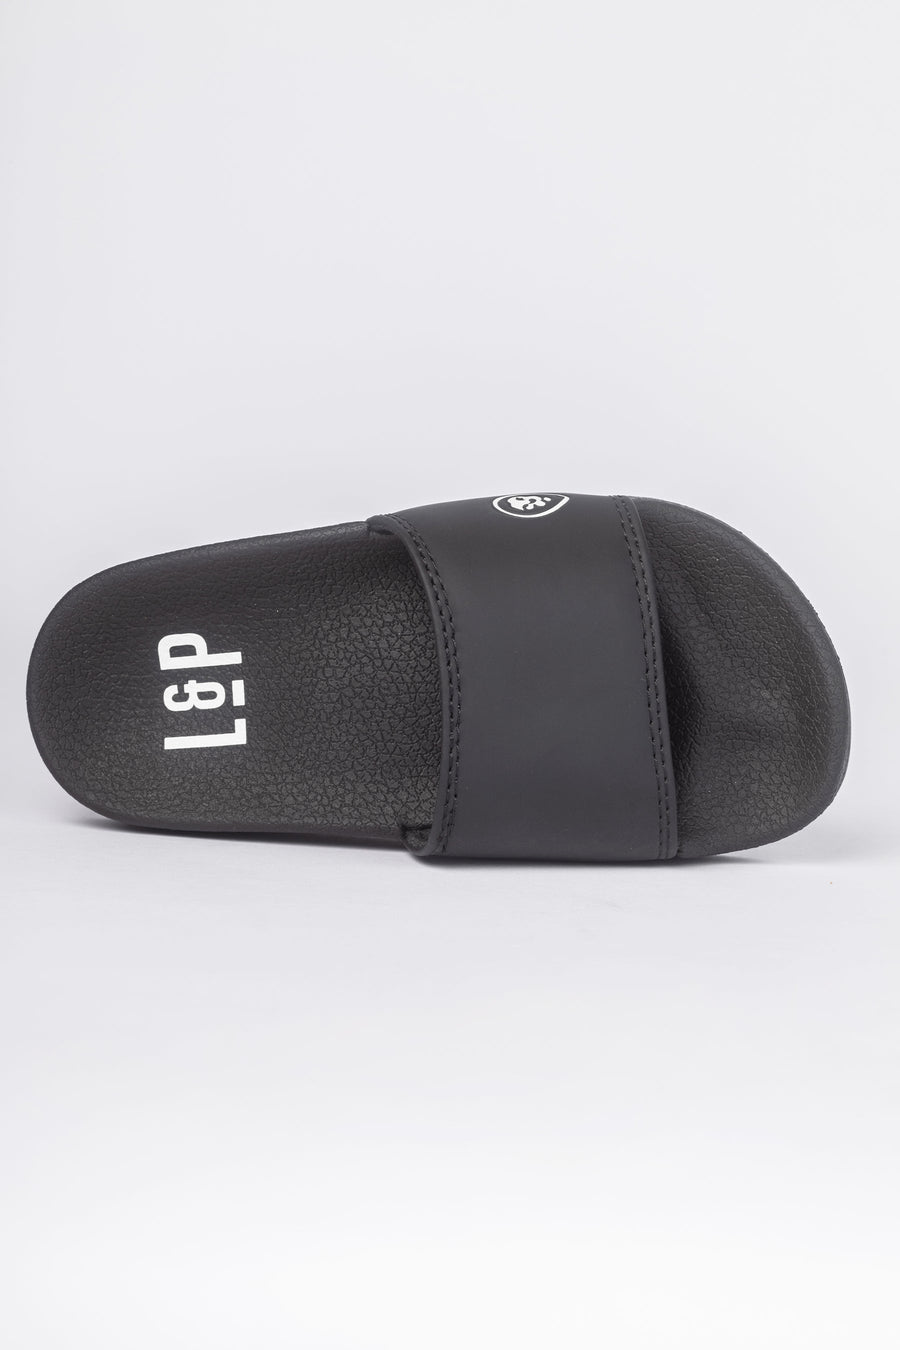 Slip-On Sandals (BLACK & WHITE)